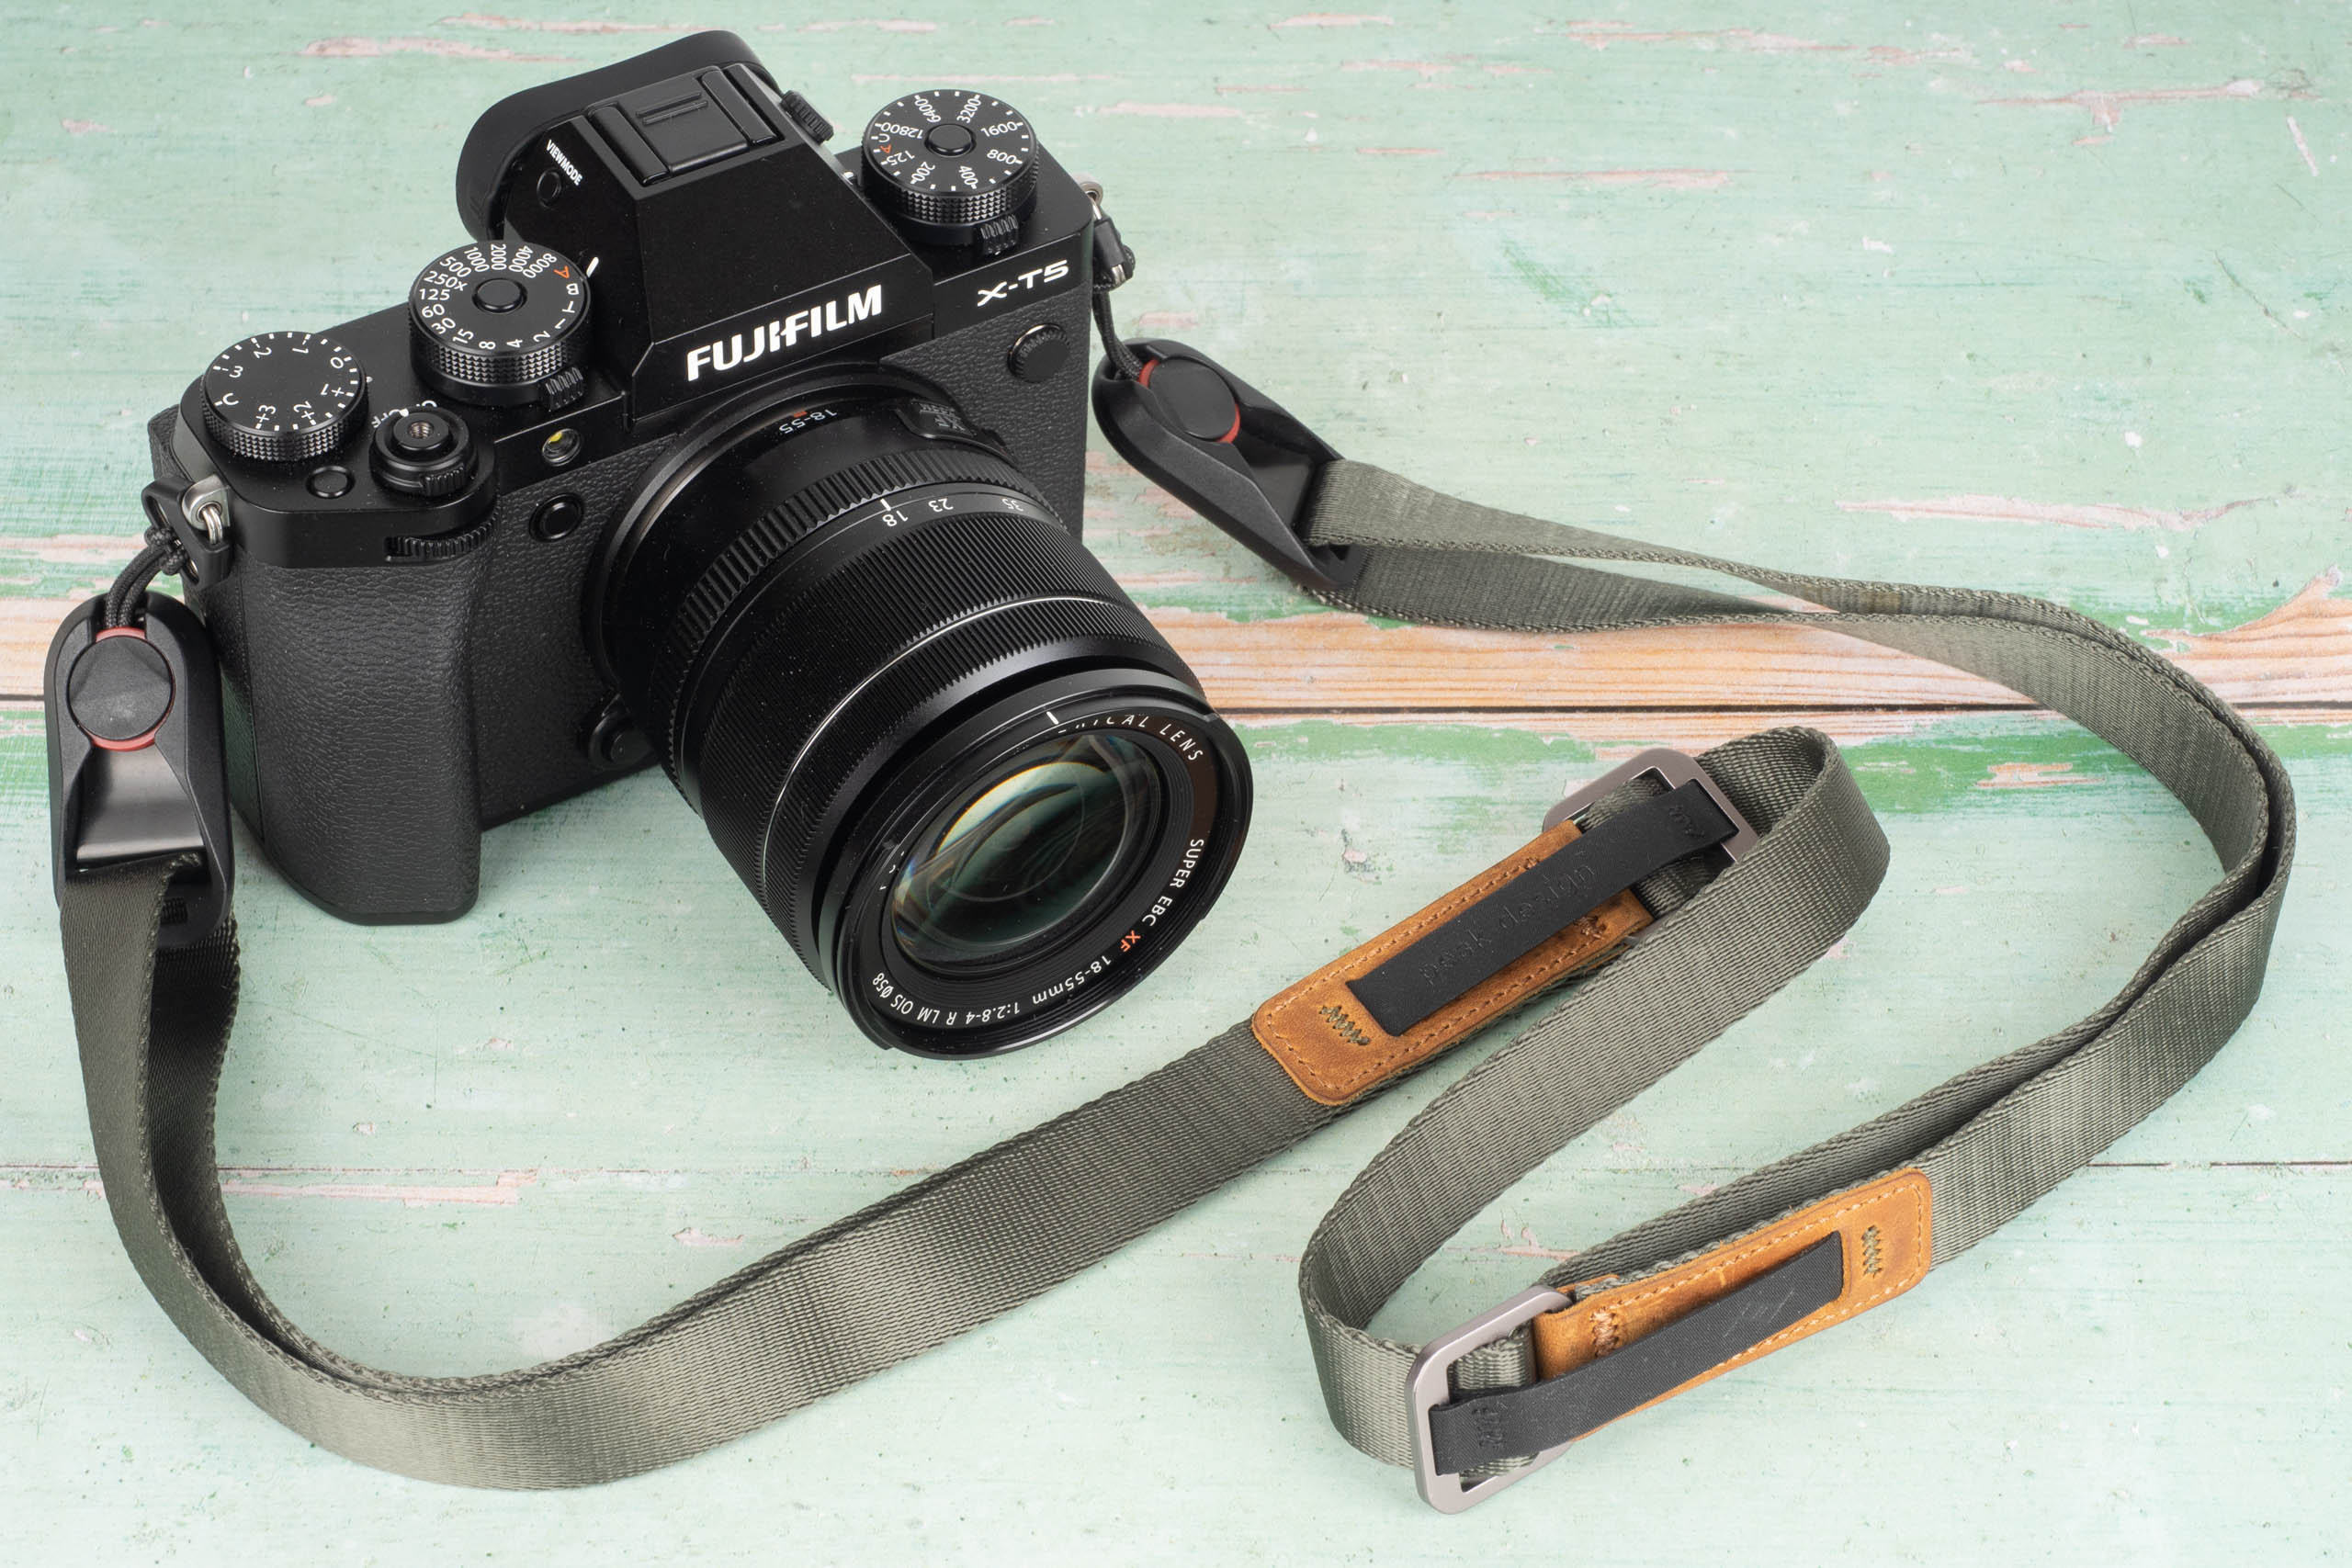 Peak Design Leash camera strap review - Amateur Photographer